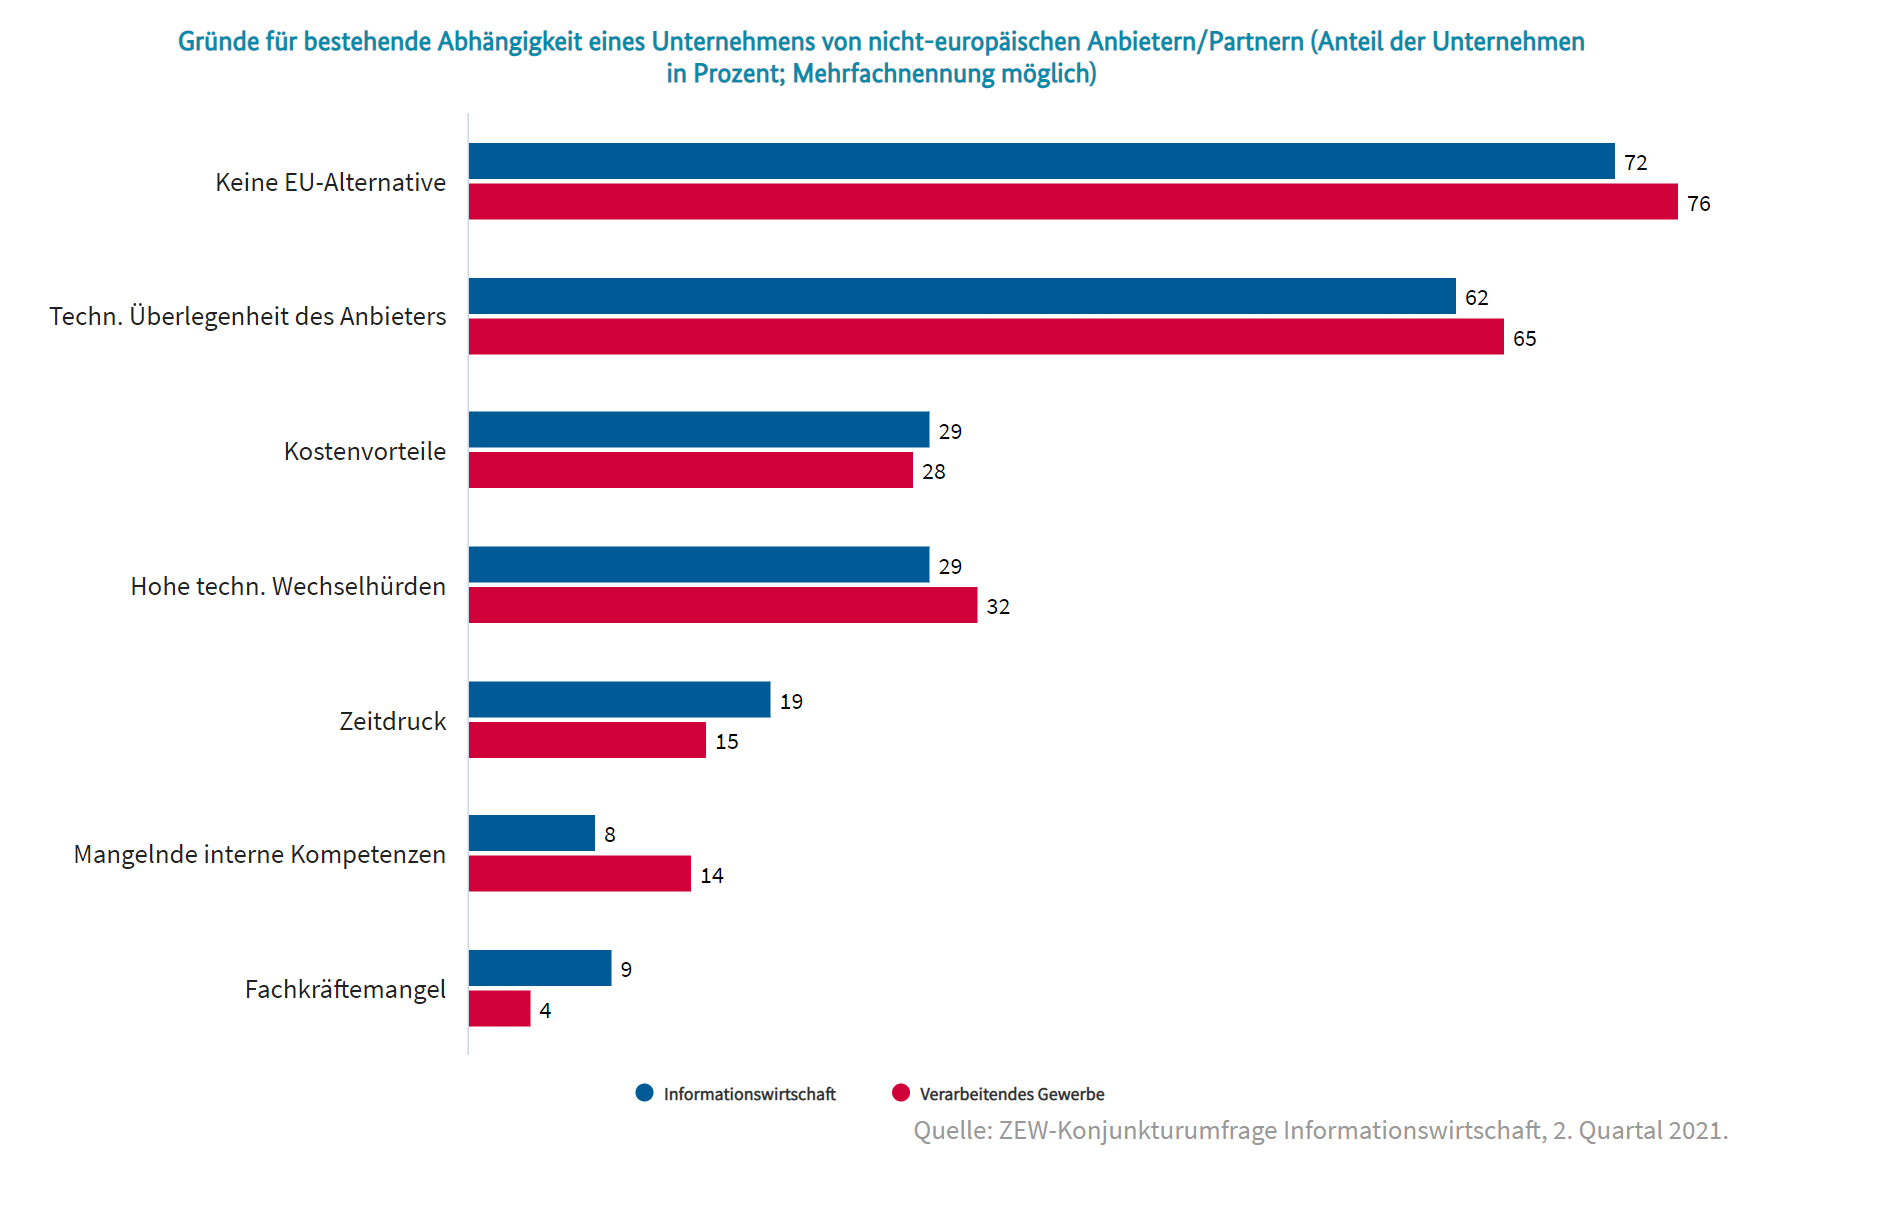 Gründe für bestehende Abhängigkeit eines Unternehmens von nicht-europäischen Anbietern/Partnern (Anteil der Unternehmen in Prozent; Mehrfachnennung möglich)